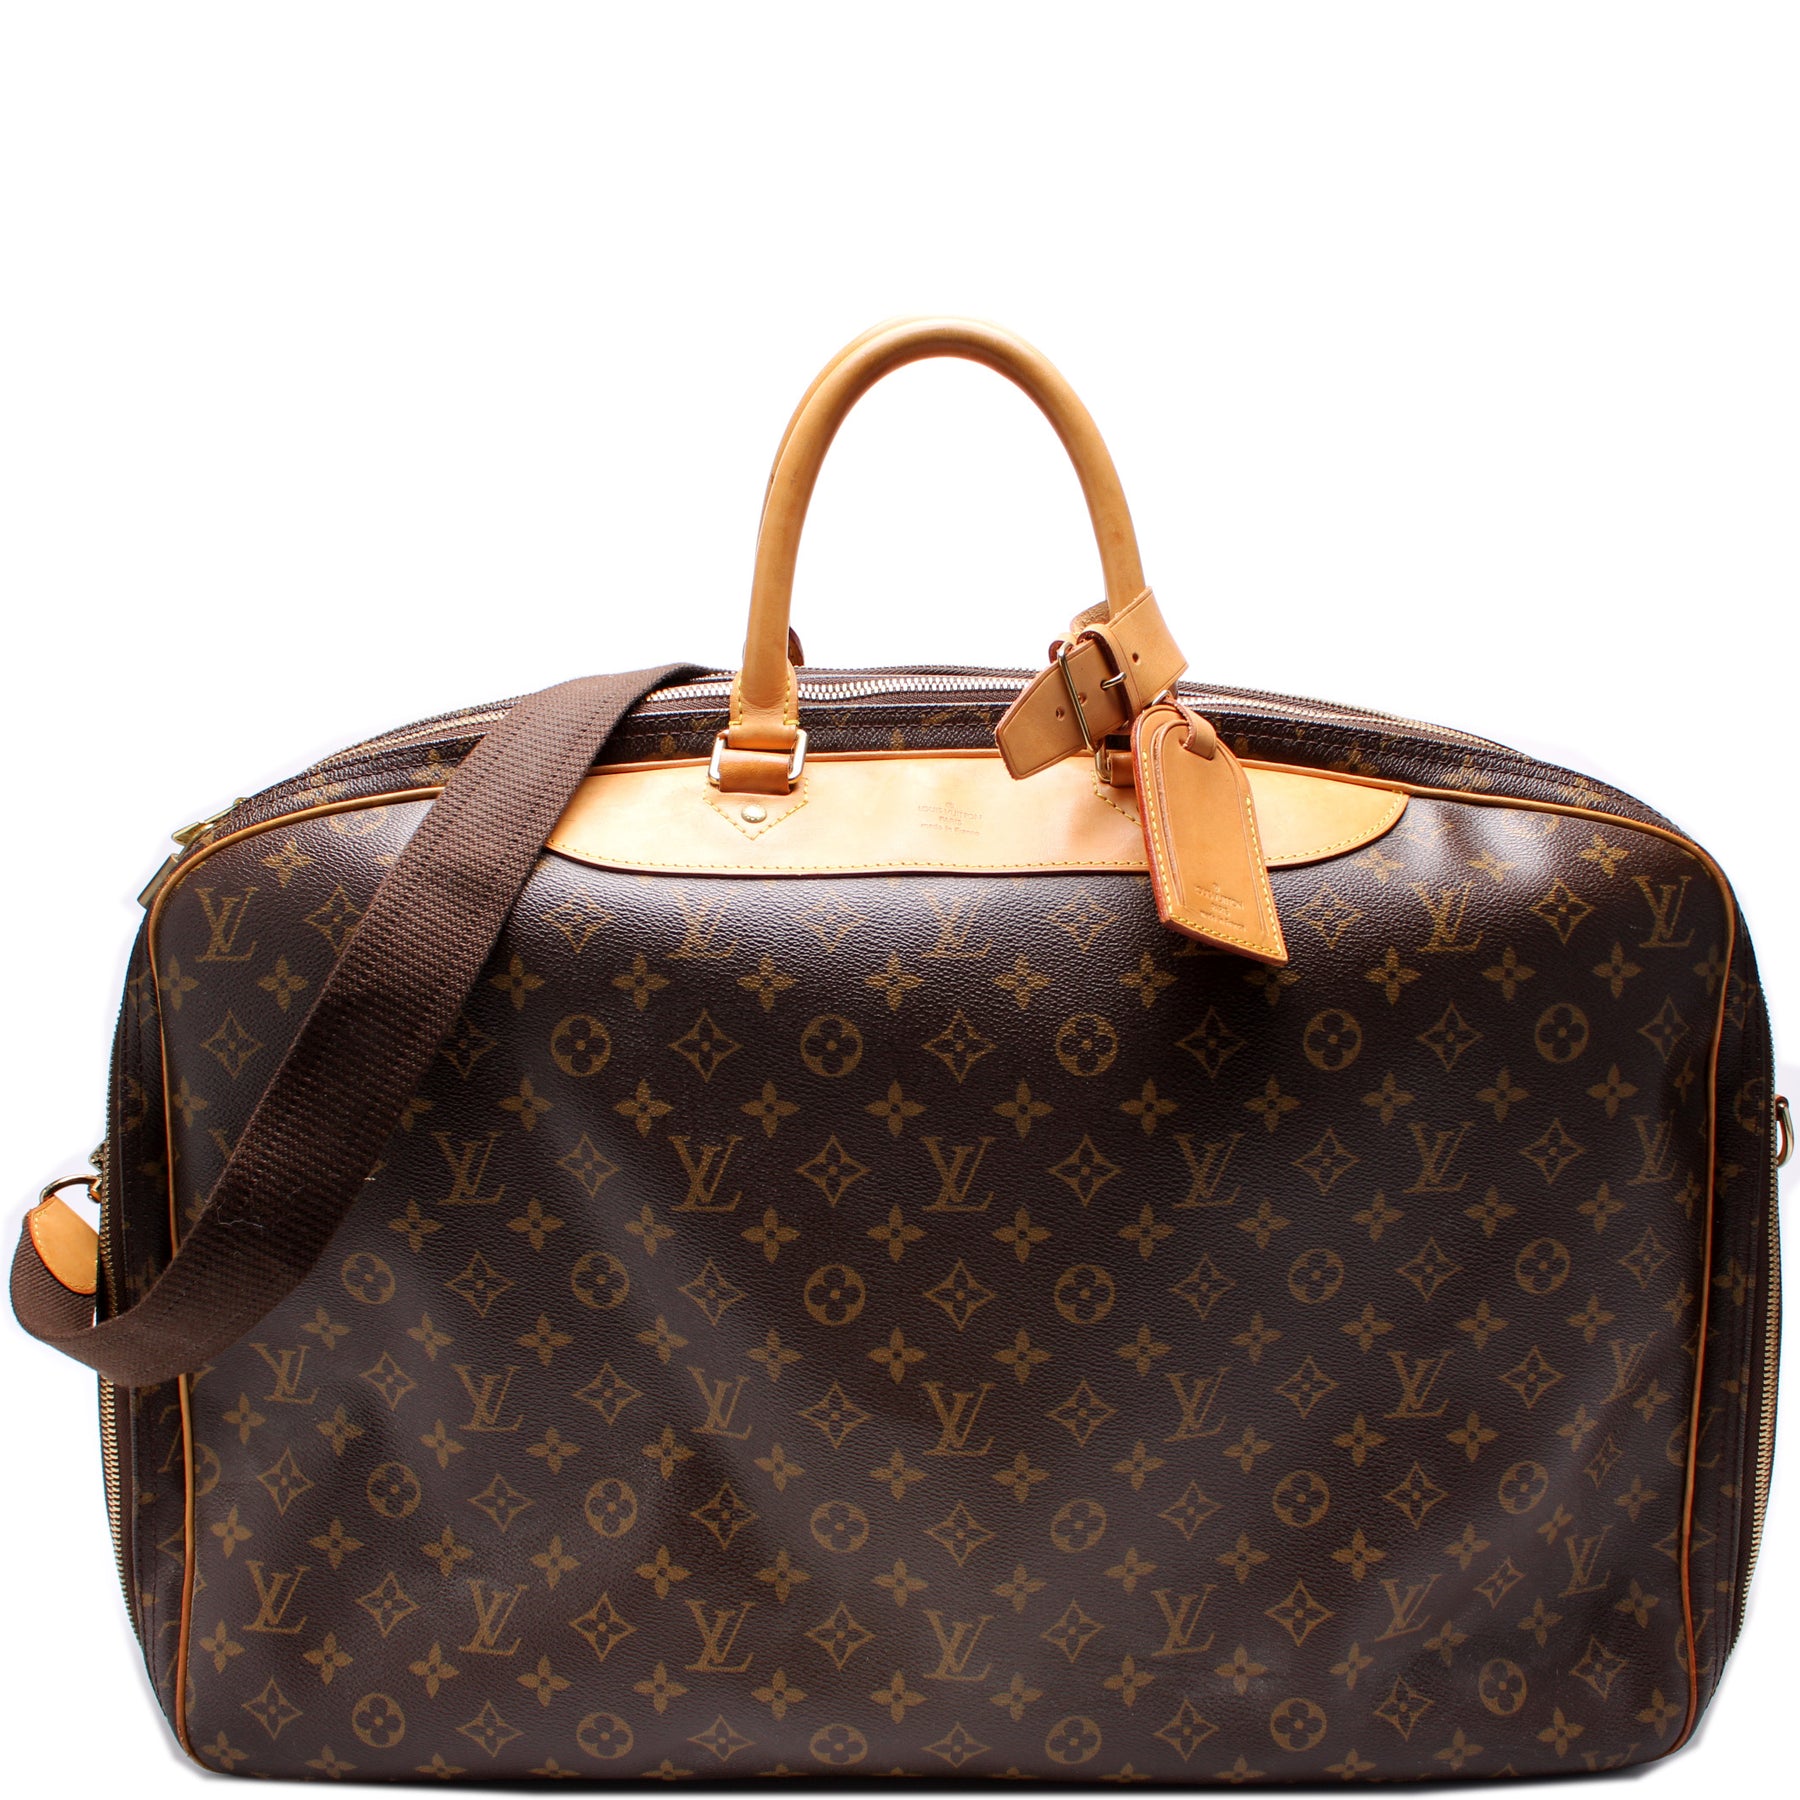 LOUIS VUITTON VIntage Alize brown monogram leather trim 2 compartment bag